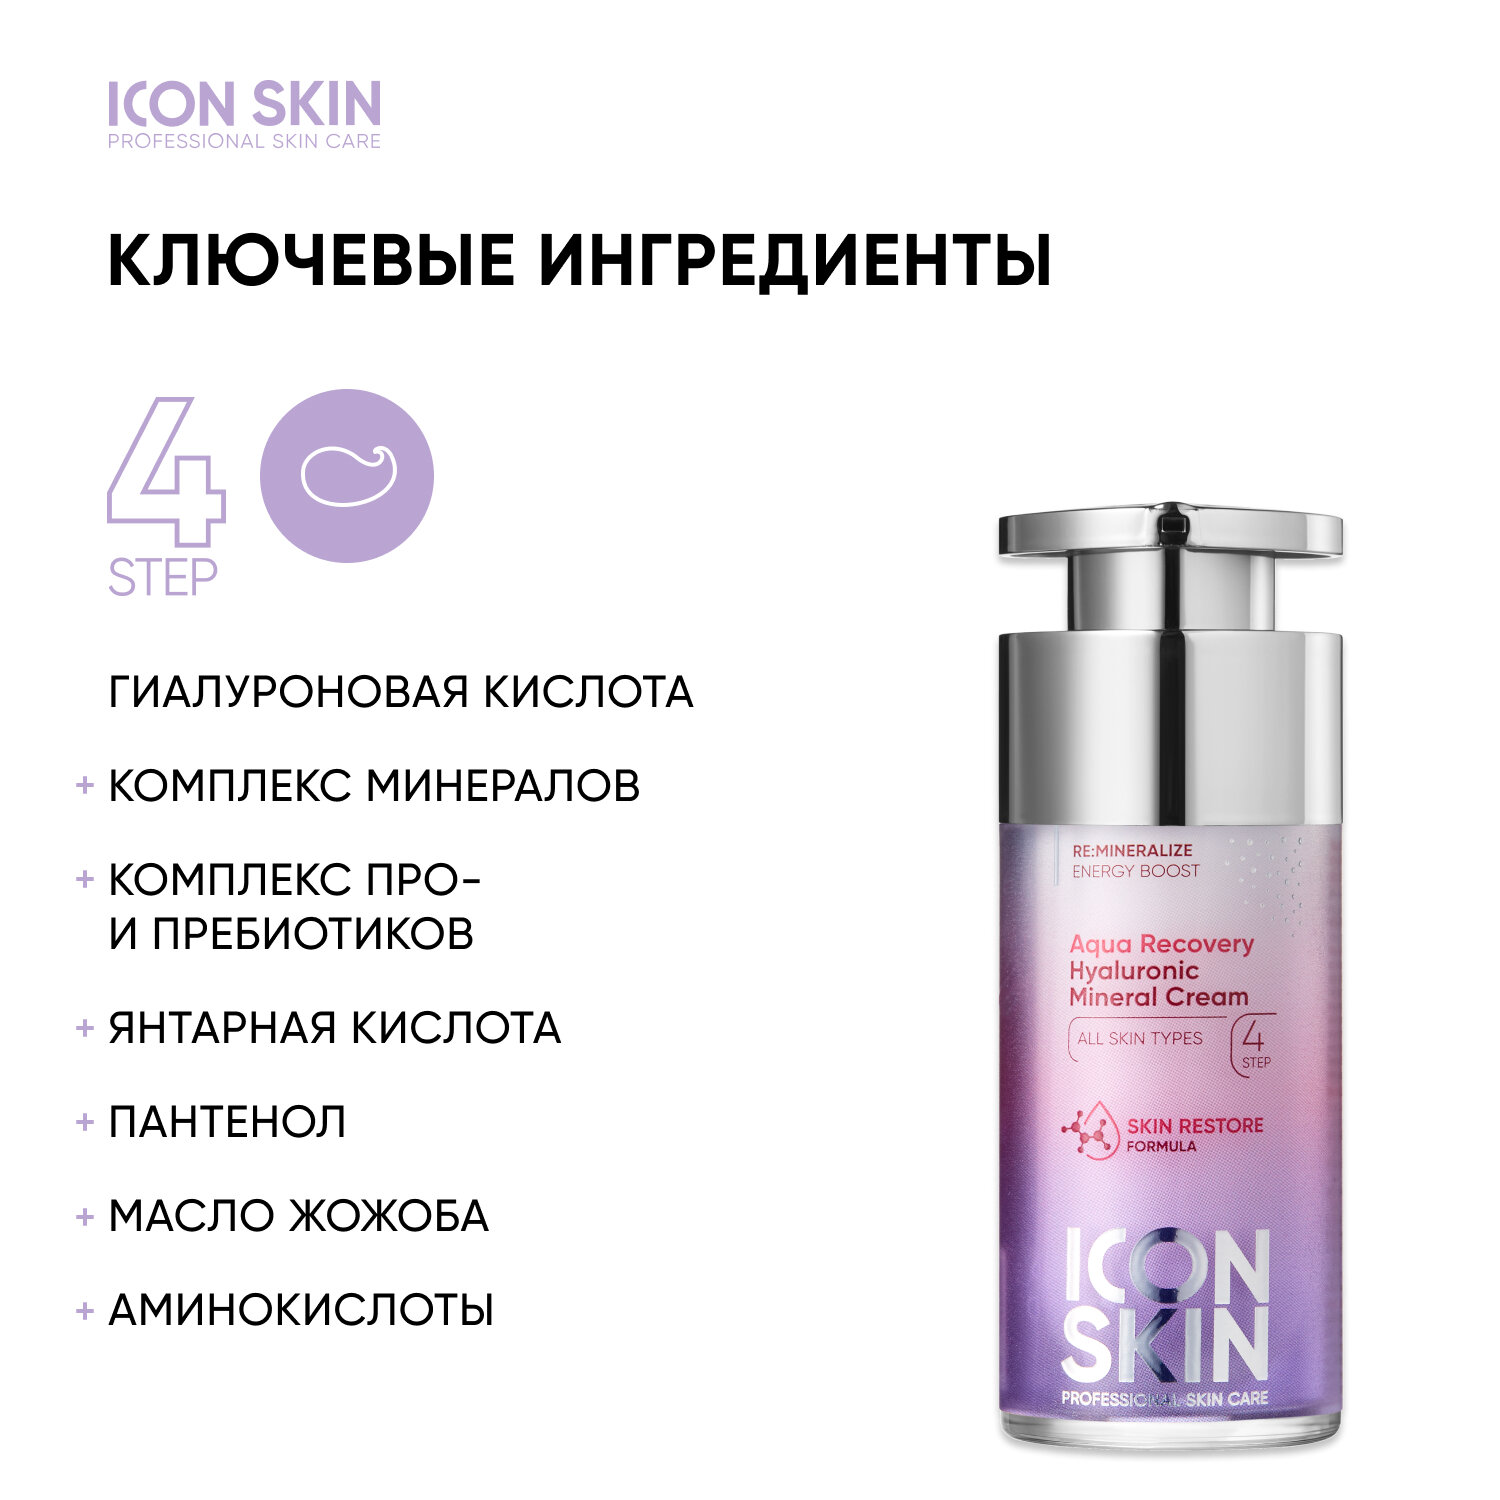 ICON SKIN / Увлажняющий крем для лица с гиалуроновой кислотой и минералами Aqua Recovery